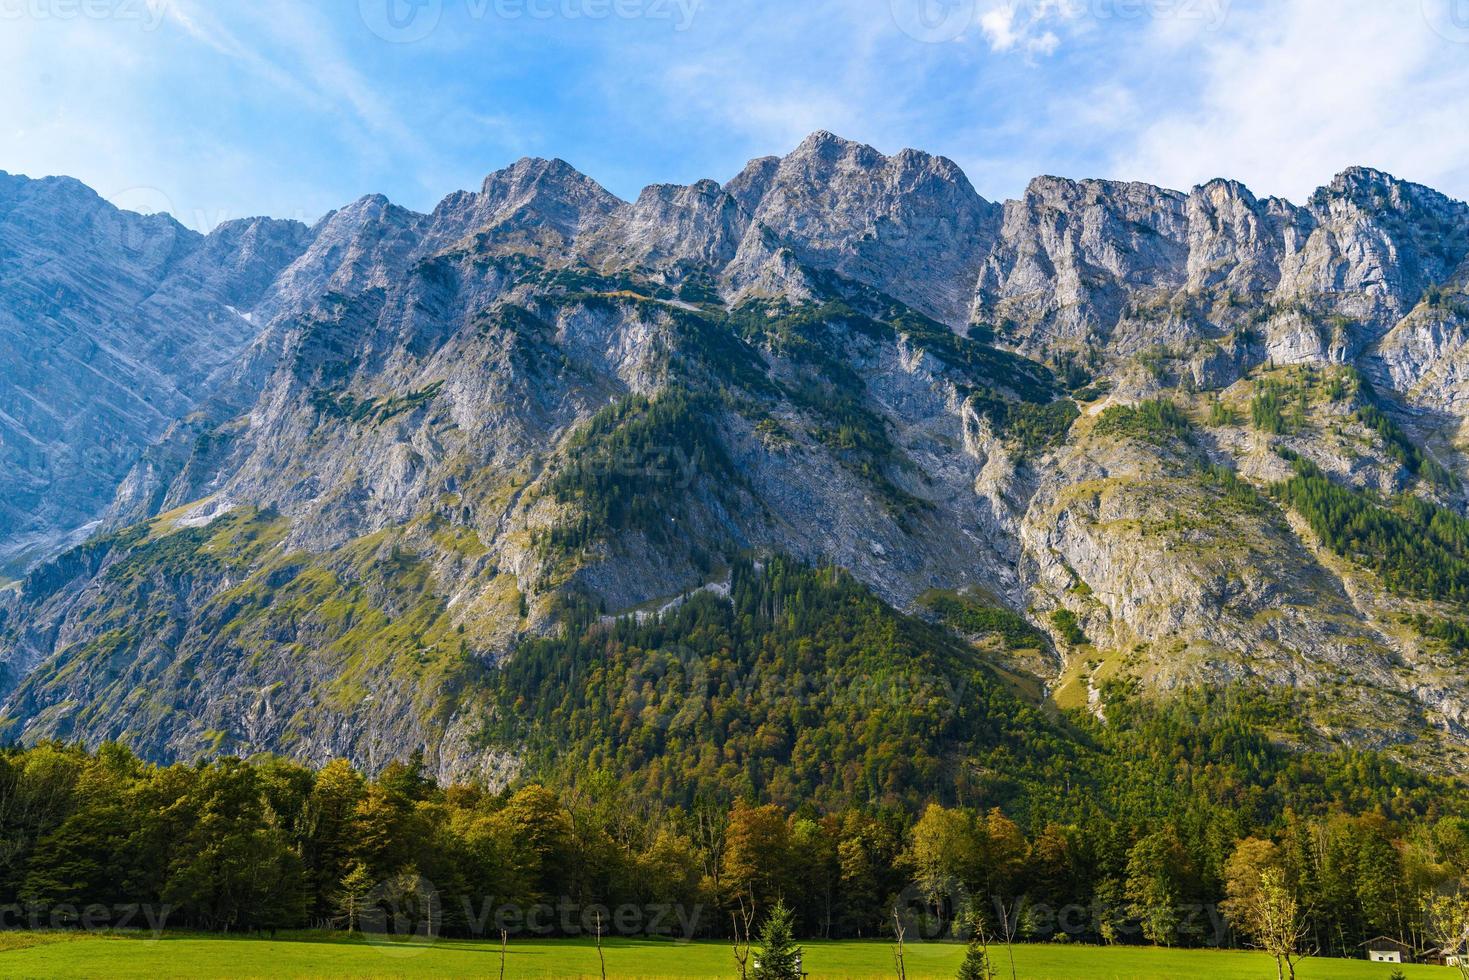 montañas de los alpes cubiertas de bosque, koenigssee, konigsee, parque nacional de berchtesgaden, baviera, alemania foto